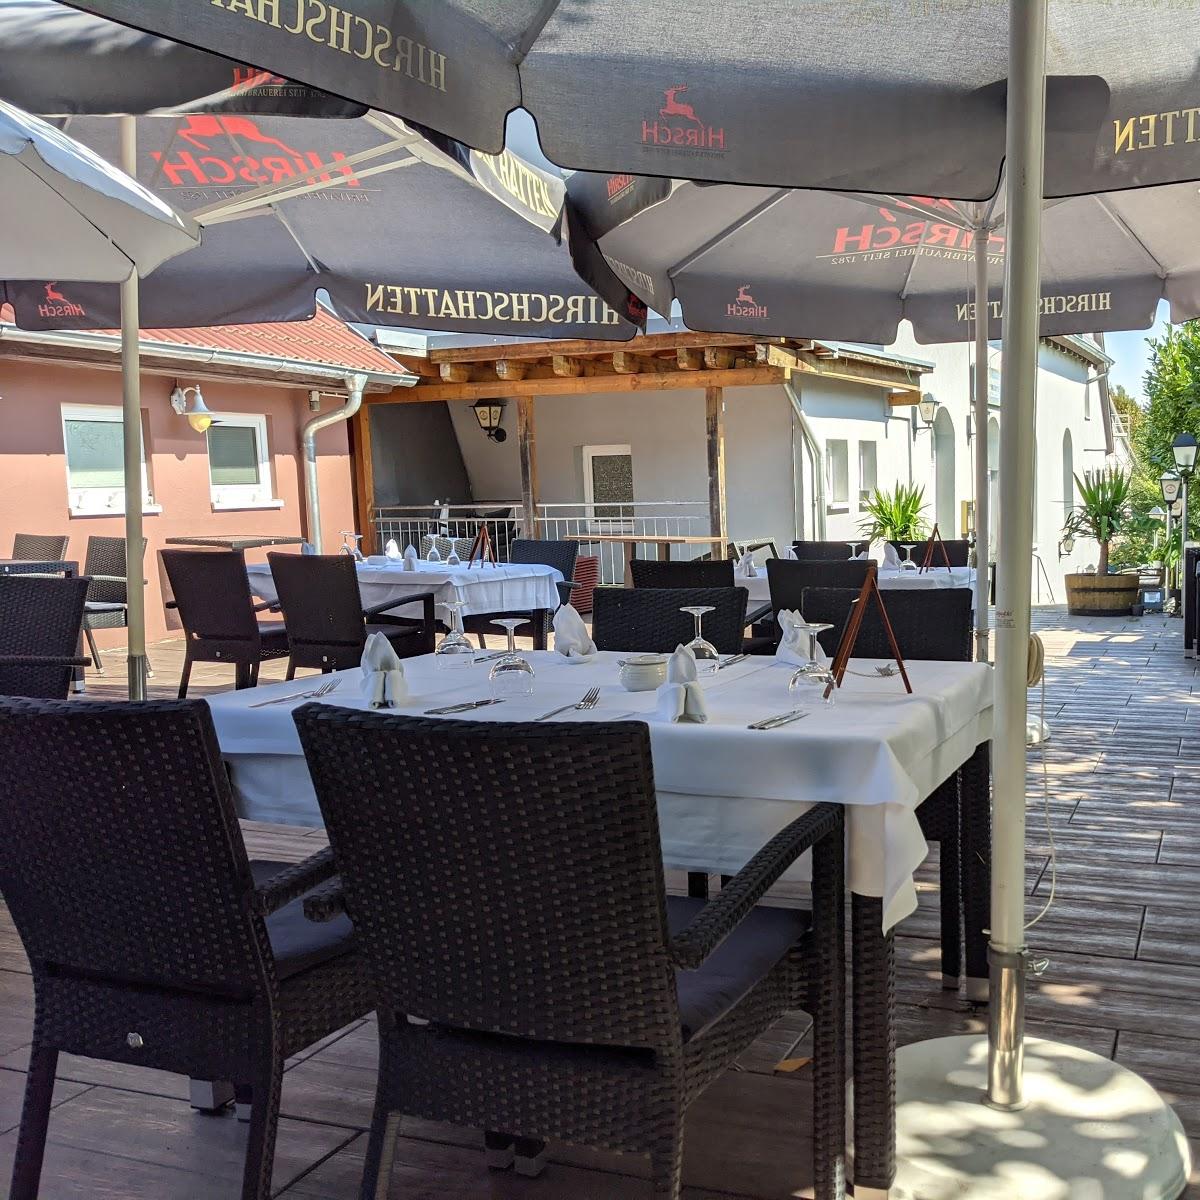 Restaurant "Ristorante Etna" in Kusterdingen